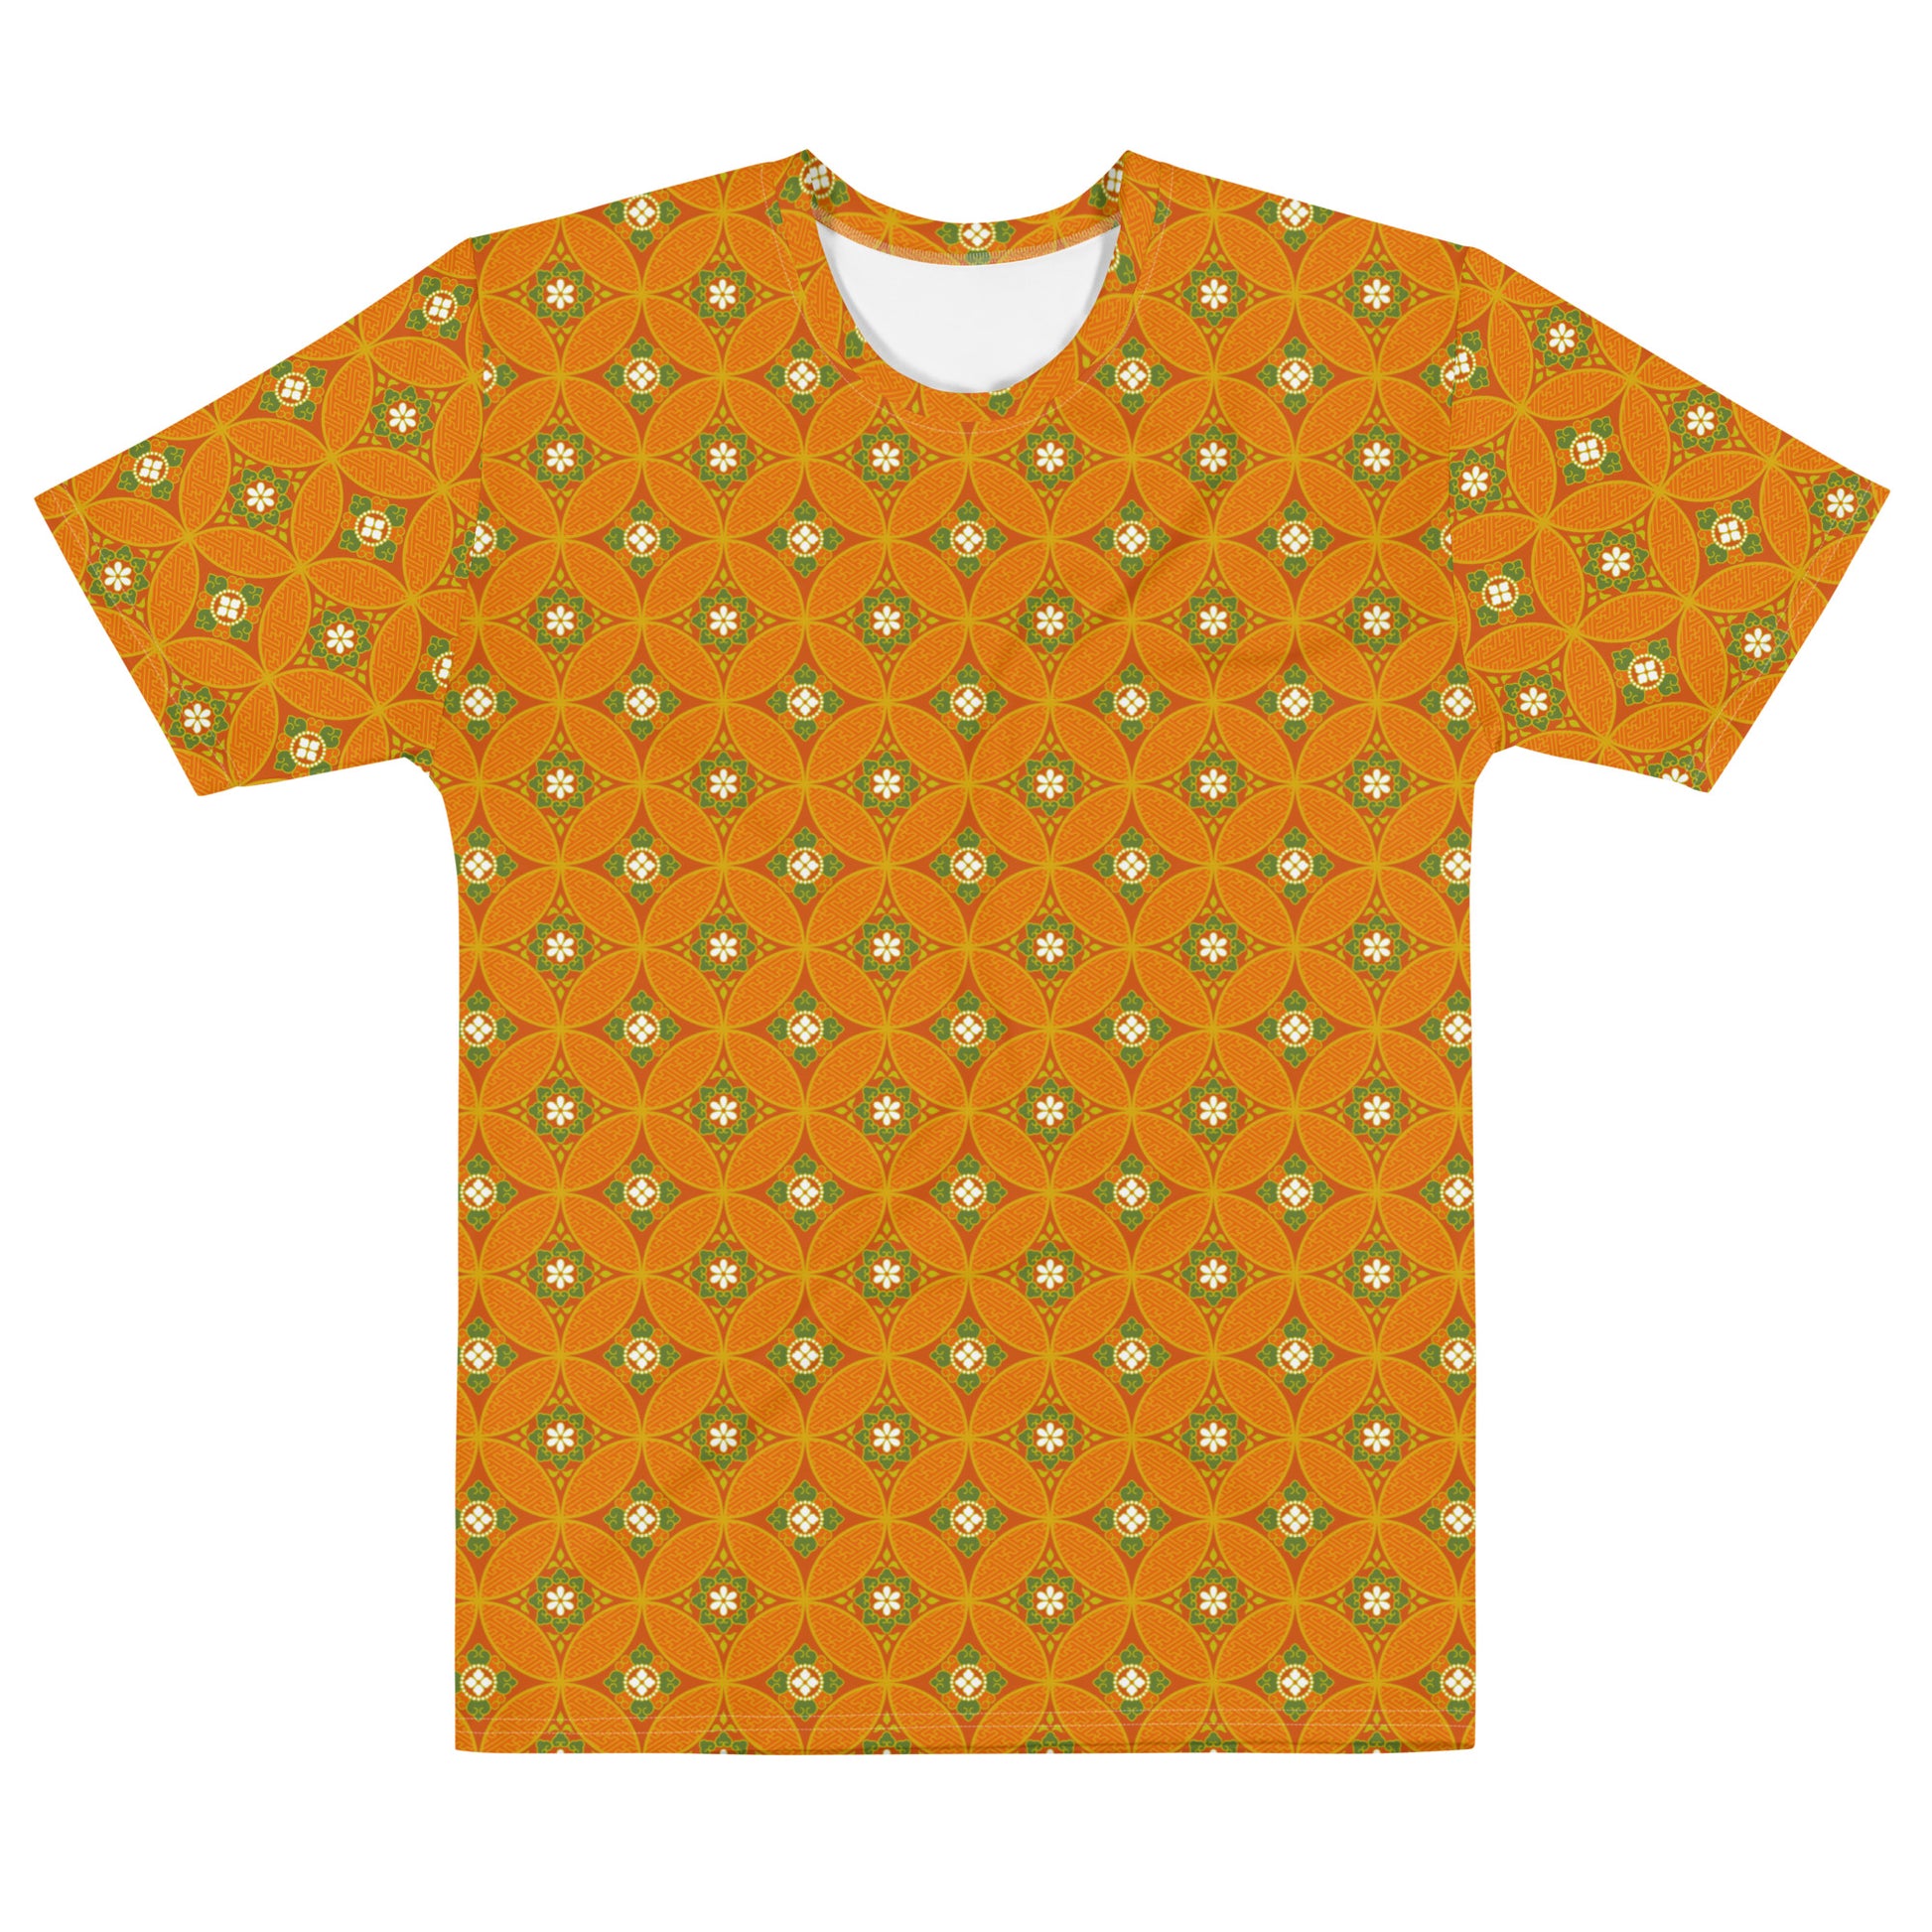 オレンジ色の七宝繋ぎ文様メンズTシャツの前面画像